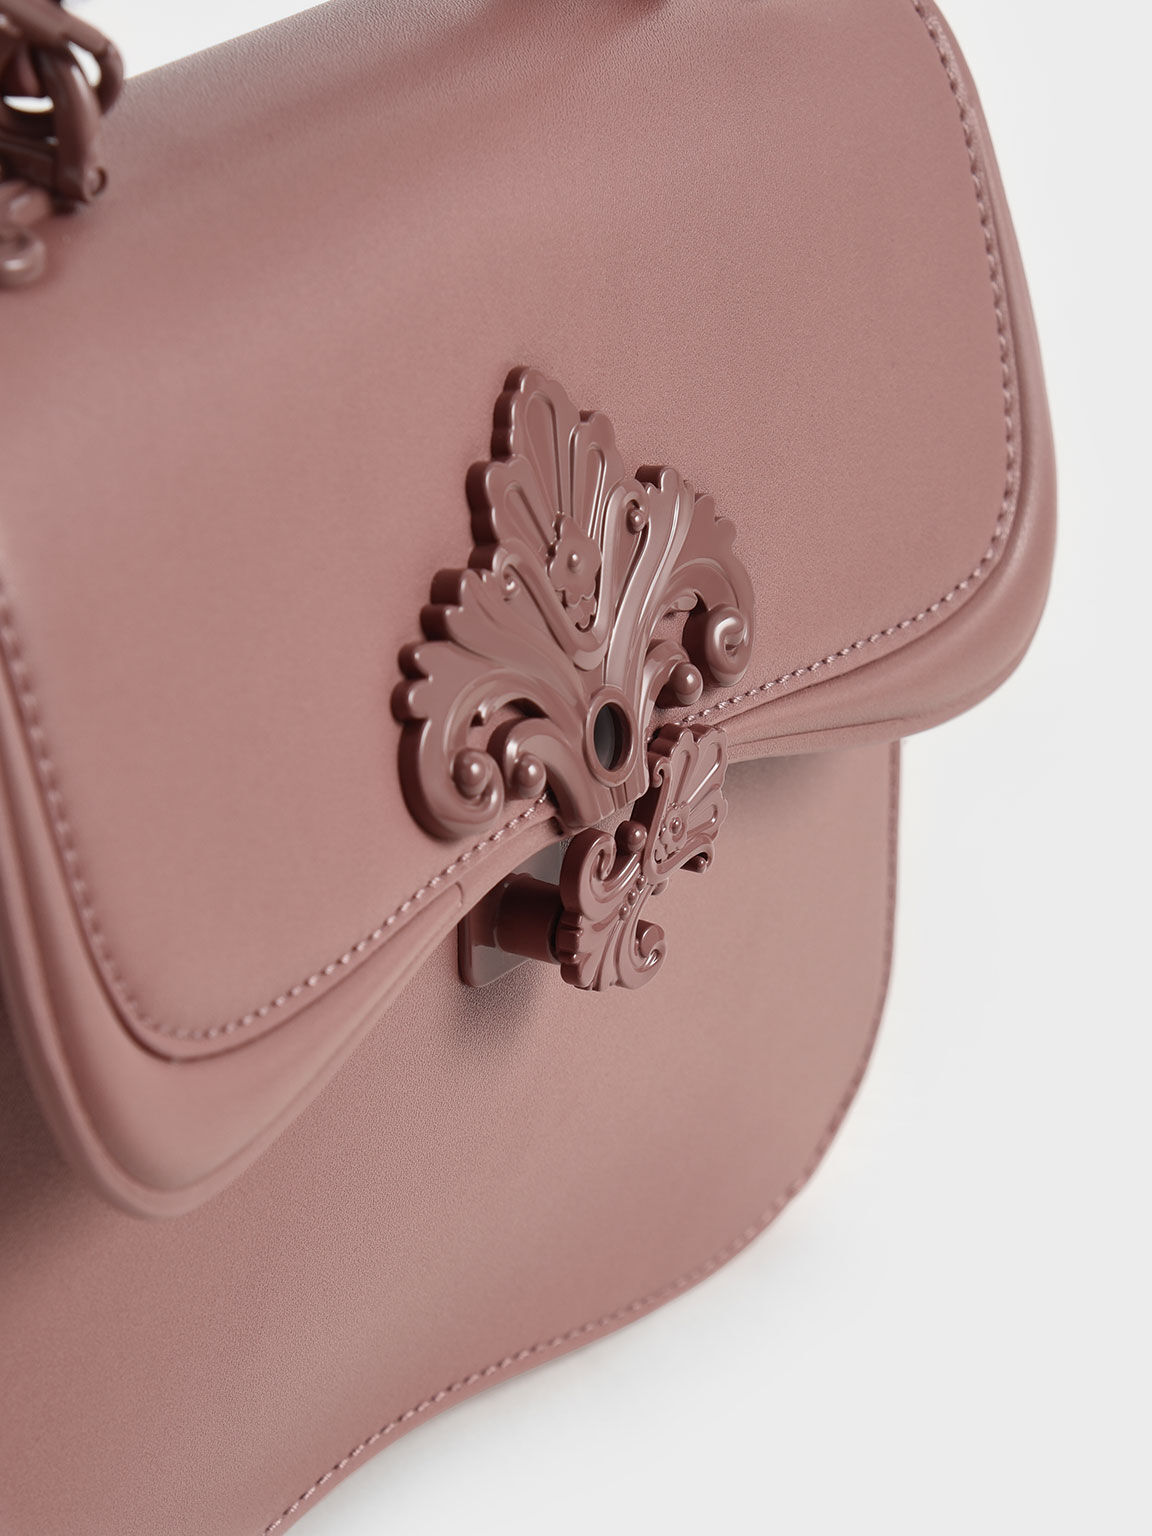 Mauve Meriah Studded Top Handle Bag - CHARLES & KEITH US